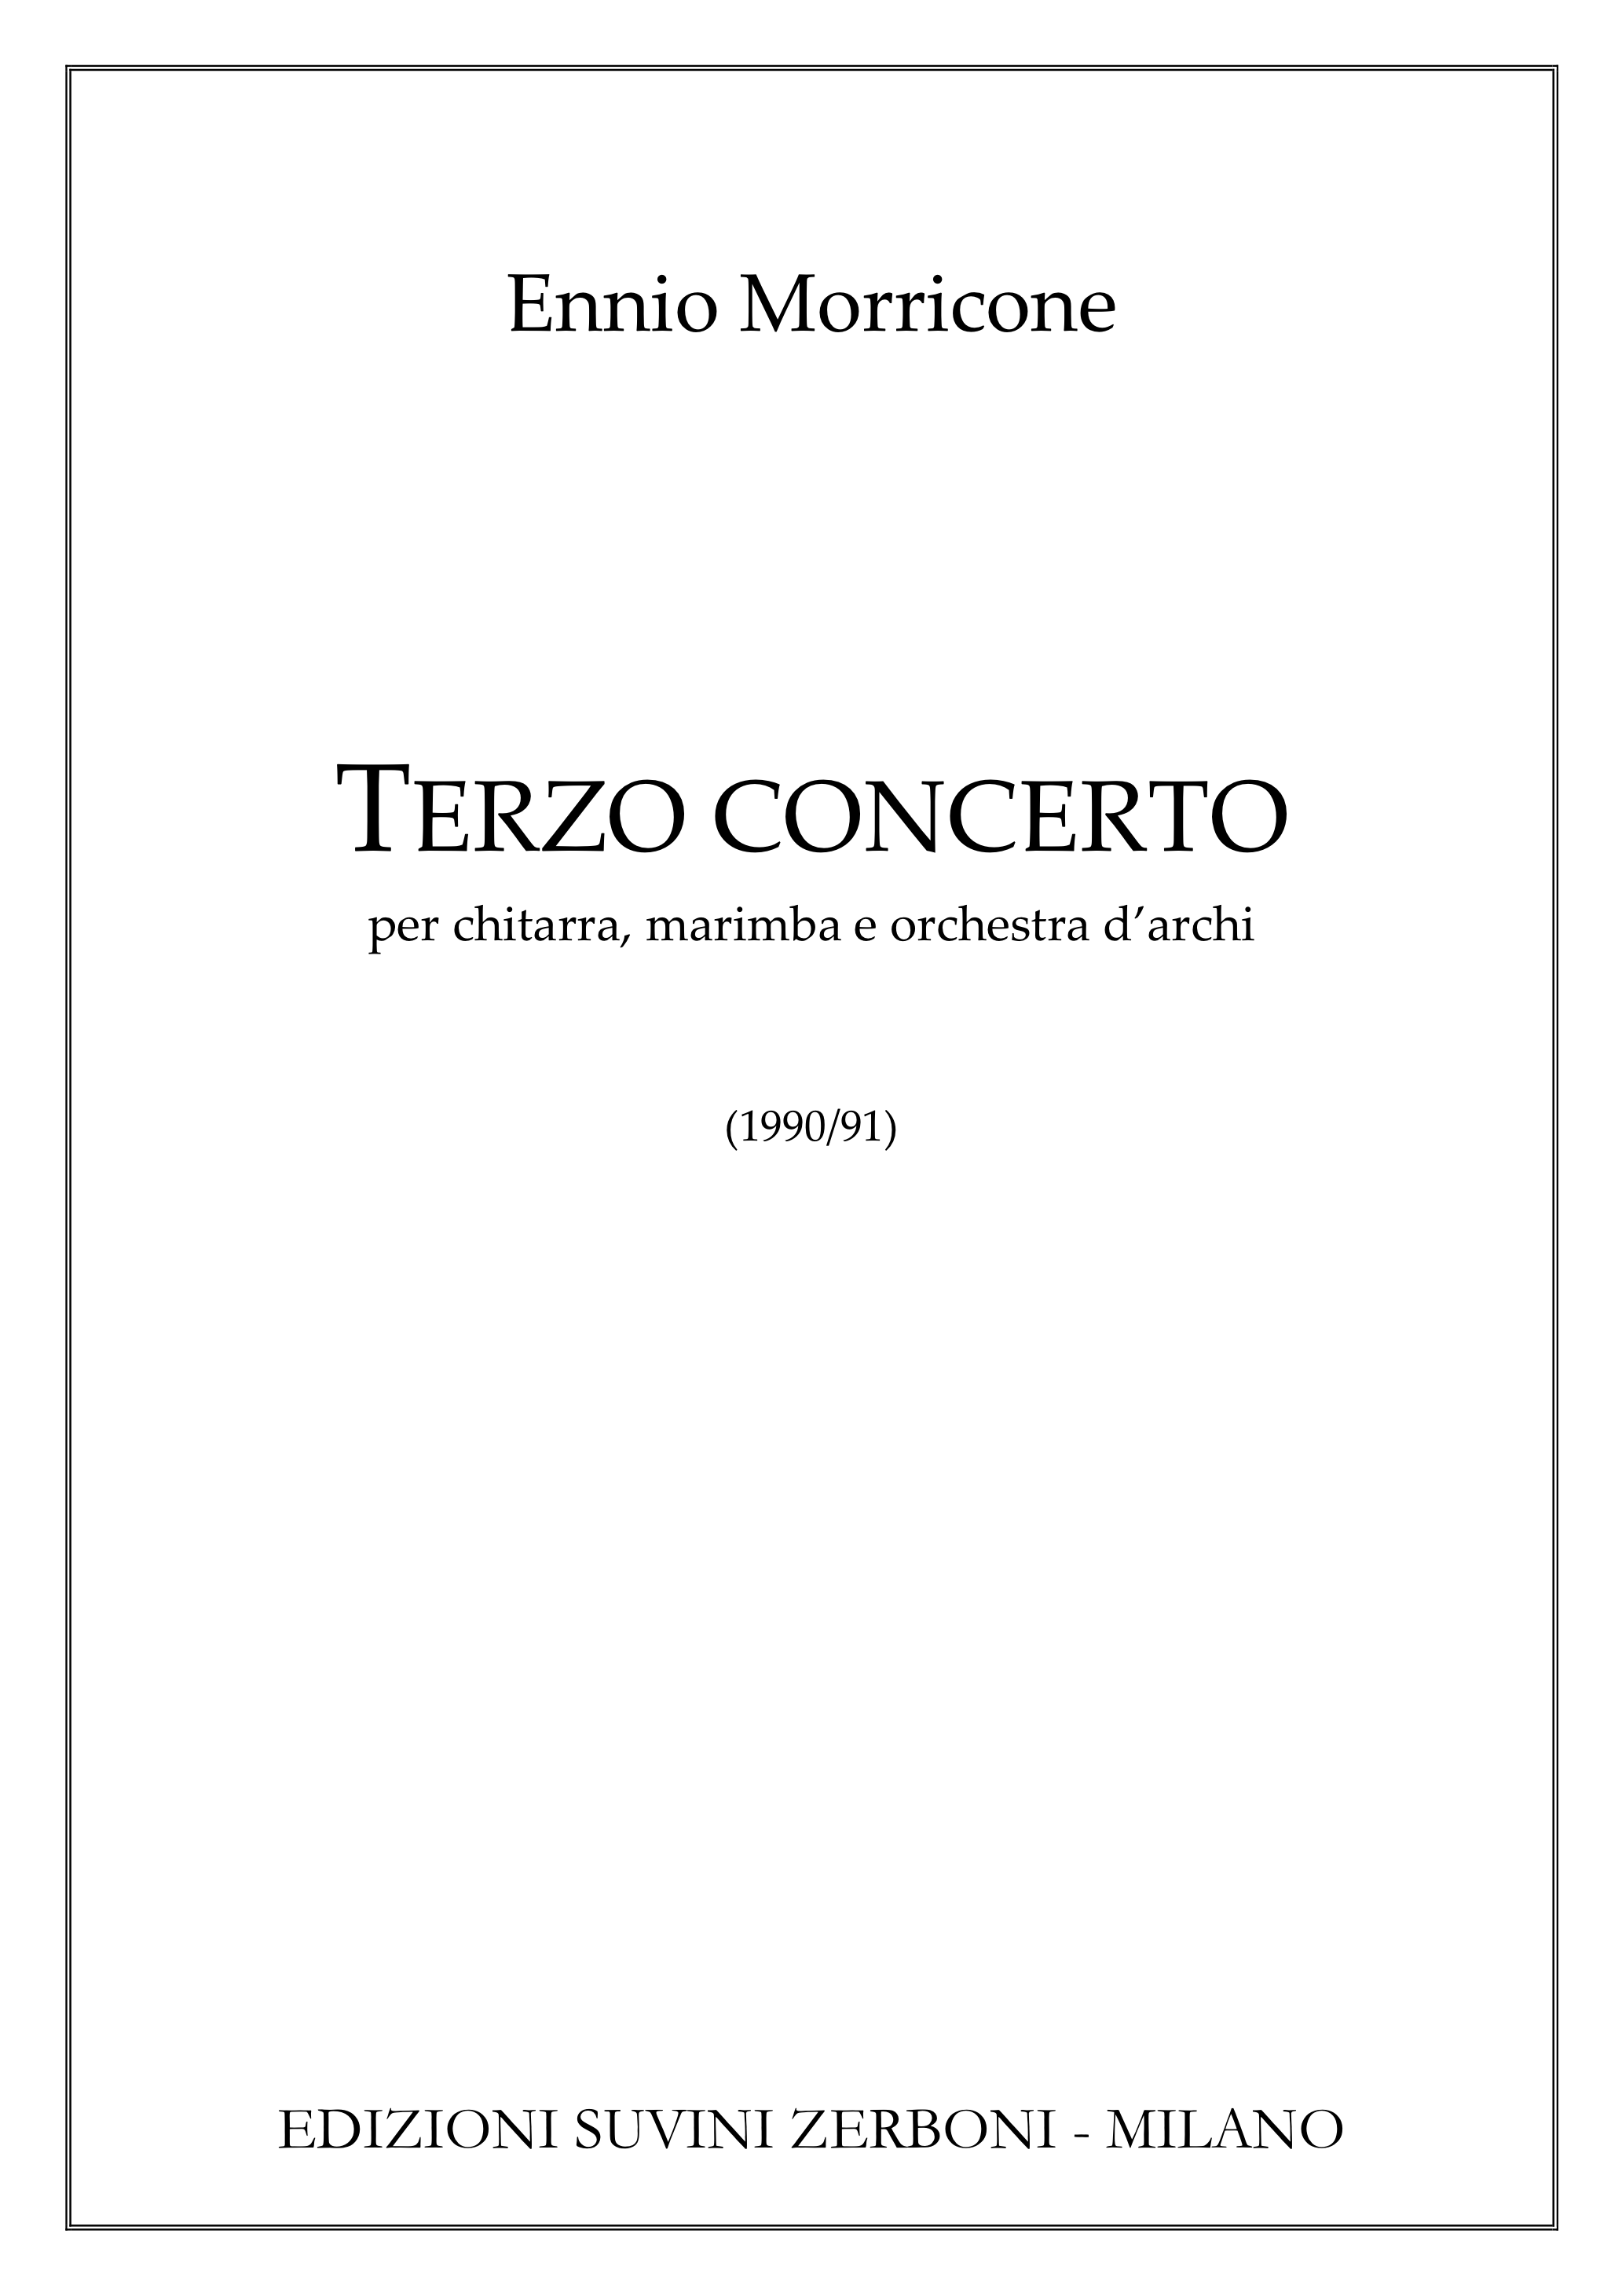 Terzo concerto_per chitarra marimba e orchestra darchi_Morricone 1